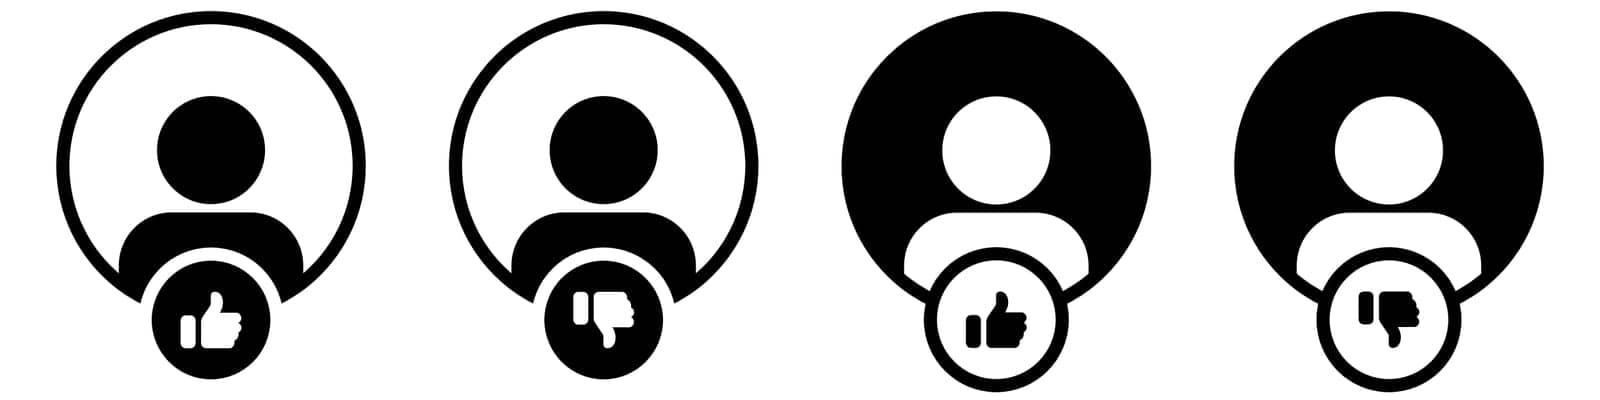 User icon symbol set simple design